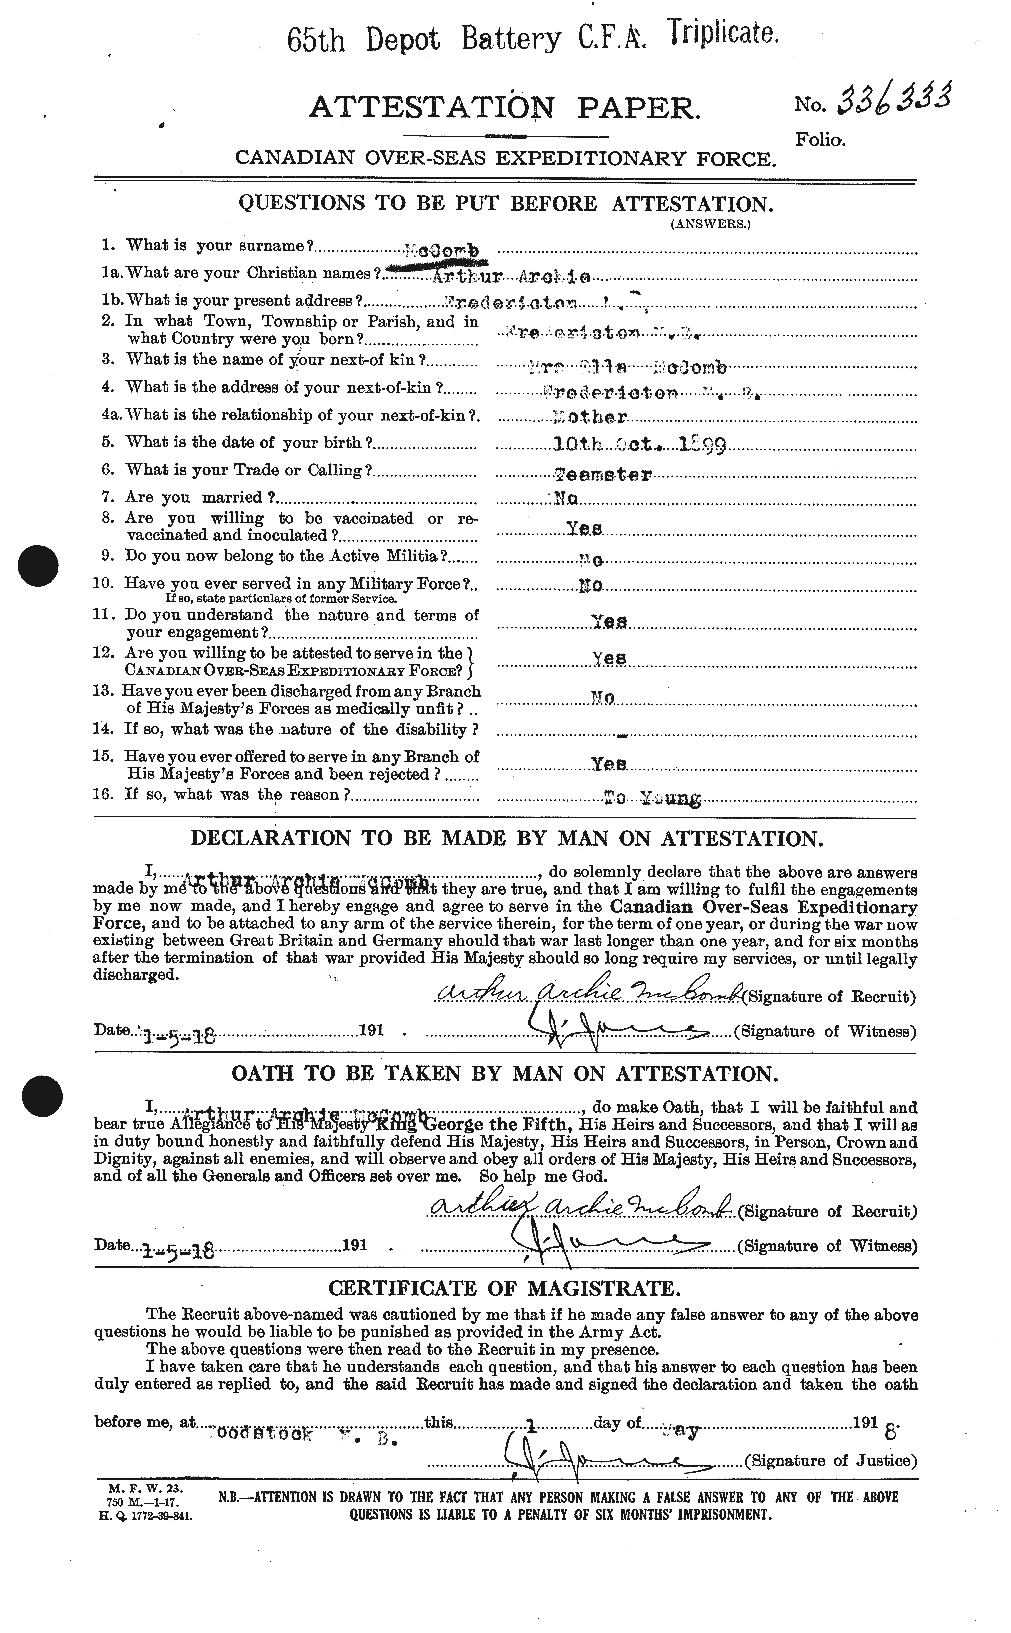 Dossiers du Personnel de la Première Guerre mondiale - CEC 133309a